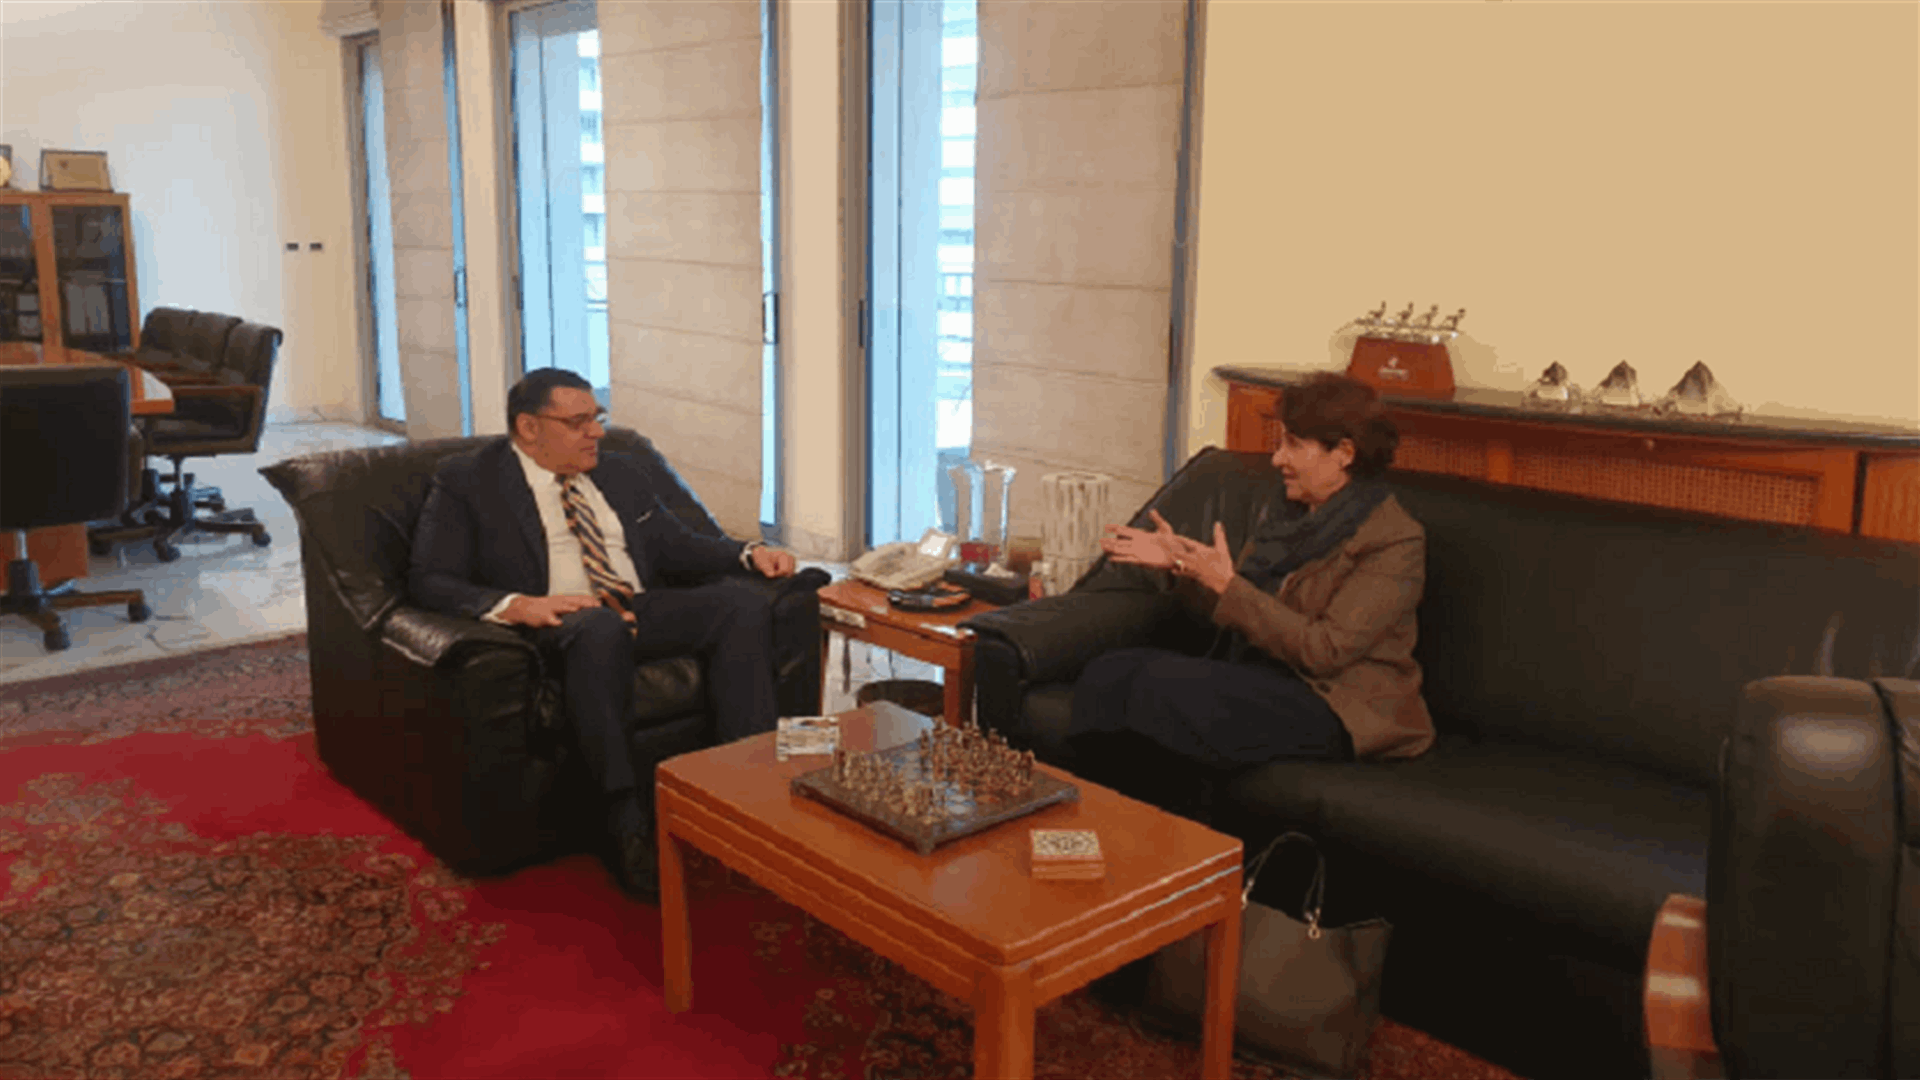 السفير المصري التقى السفيرة الفرنسية أمس... وهذا ما كشفته مصادر دبلوماسية لـ&quot;الجمهورية&quot;